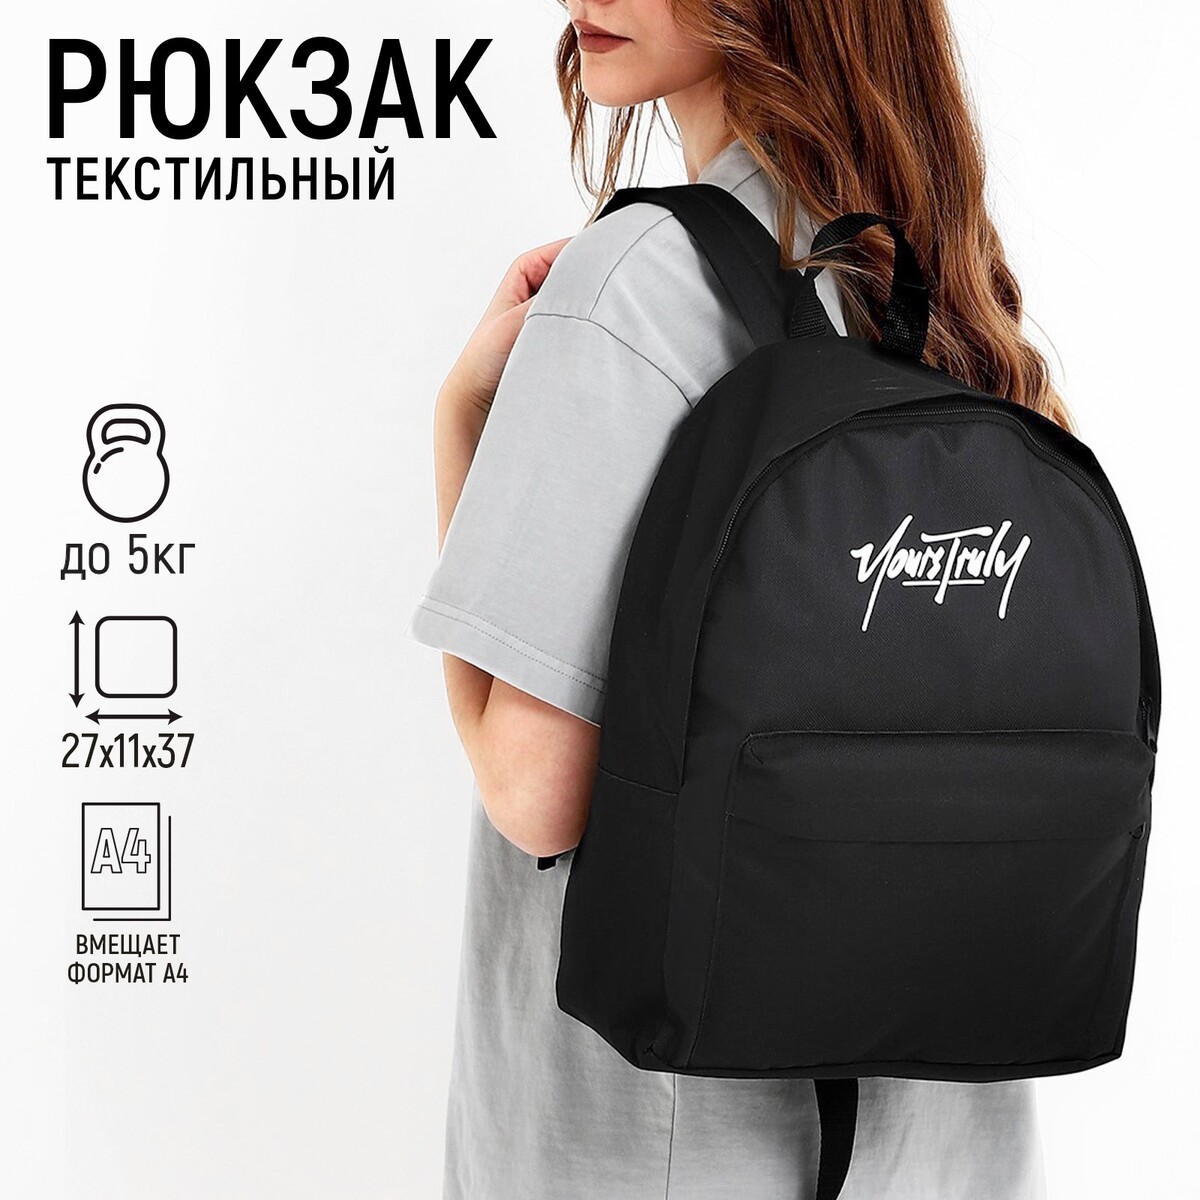 Рюкзак текстильный nazamok, с карманом, 27*11*37, черный